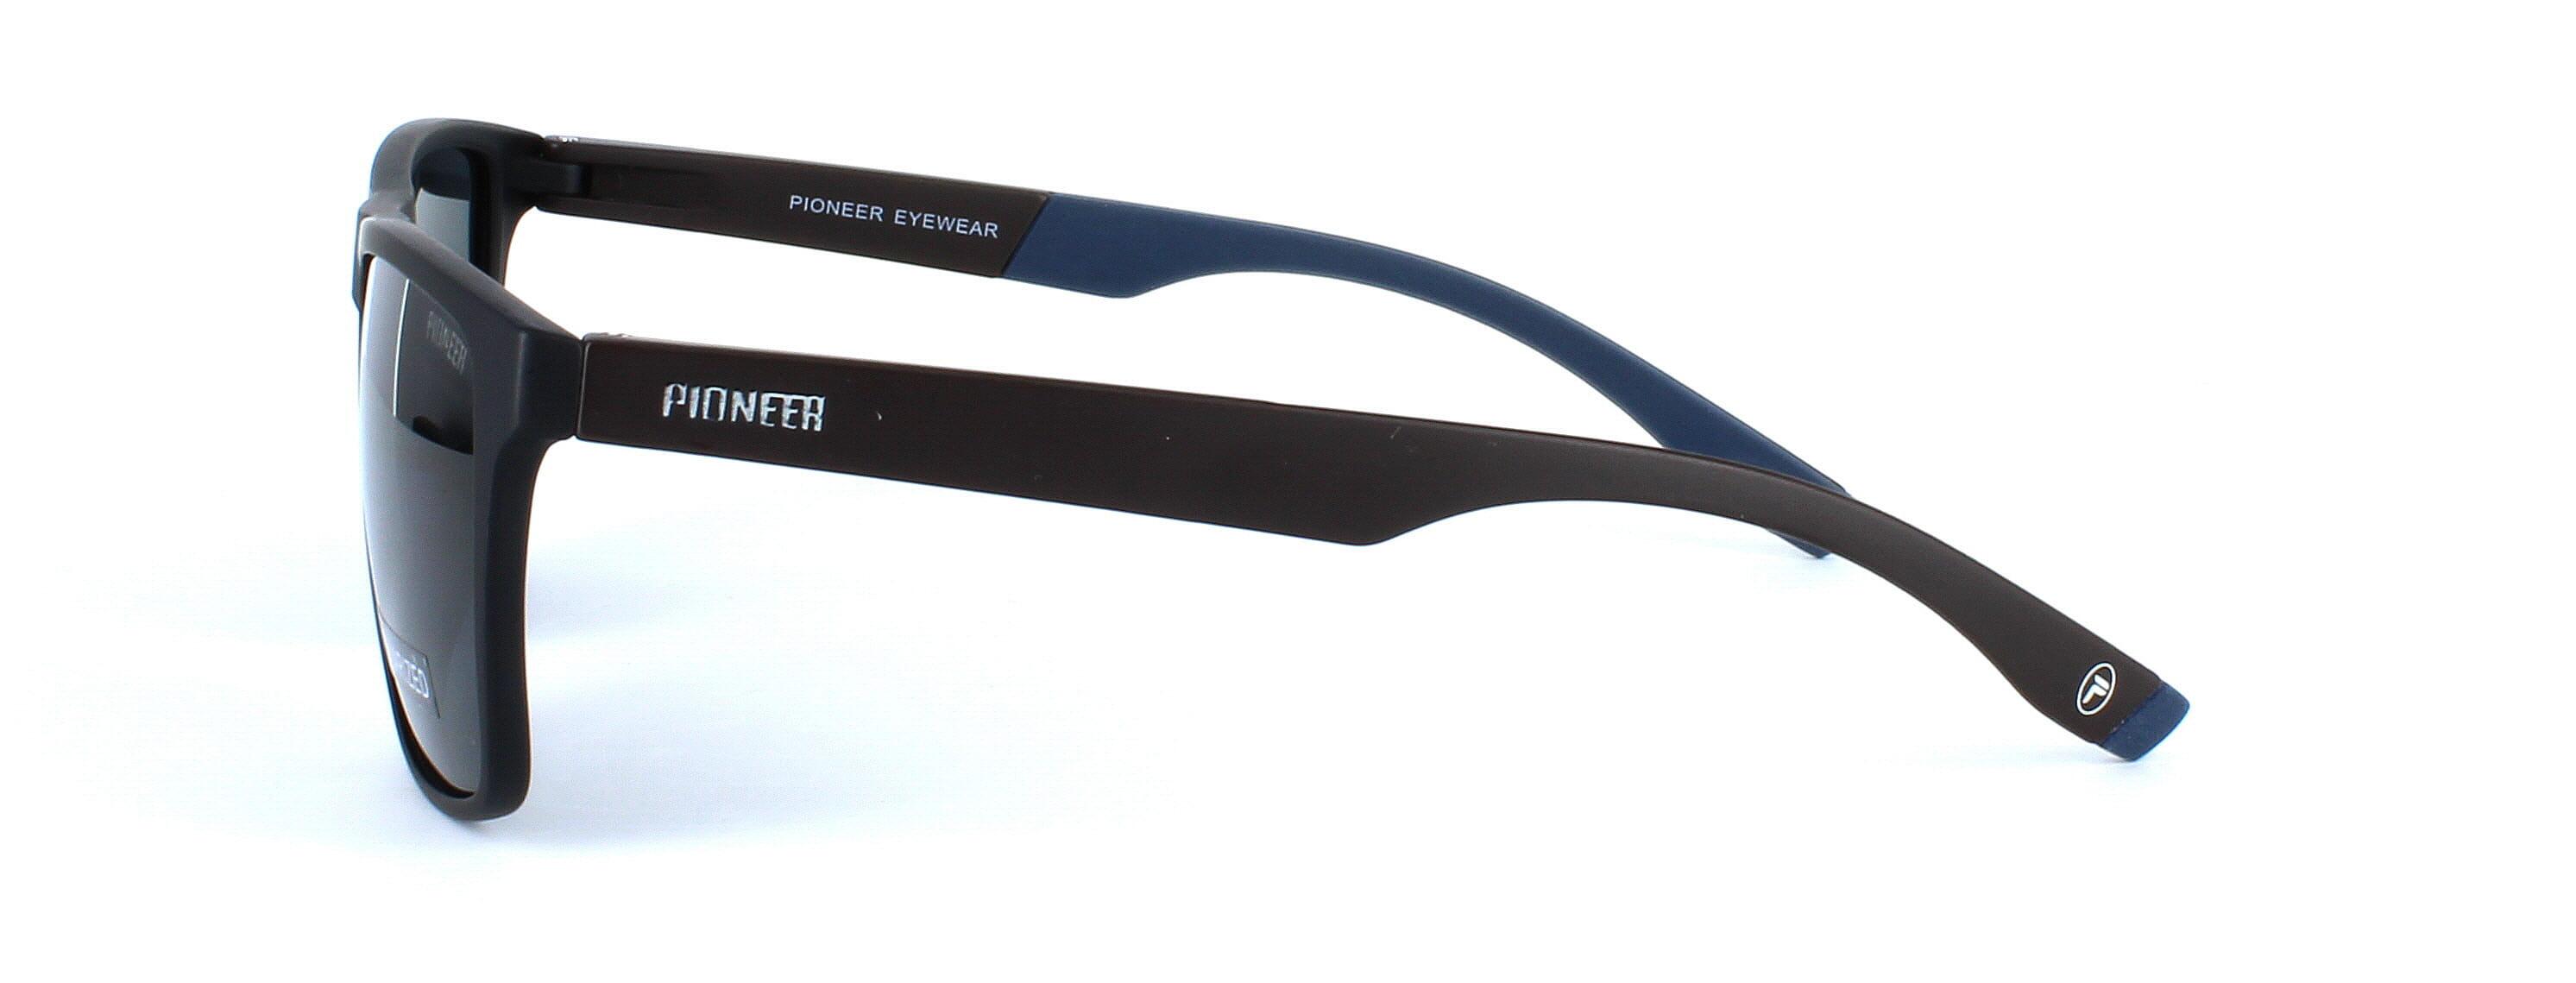 Buy Branded Sunglasses & Goggles for Men & Women Online